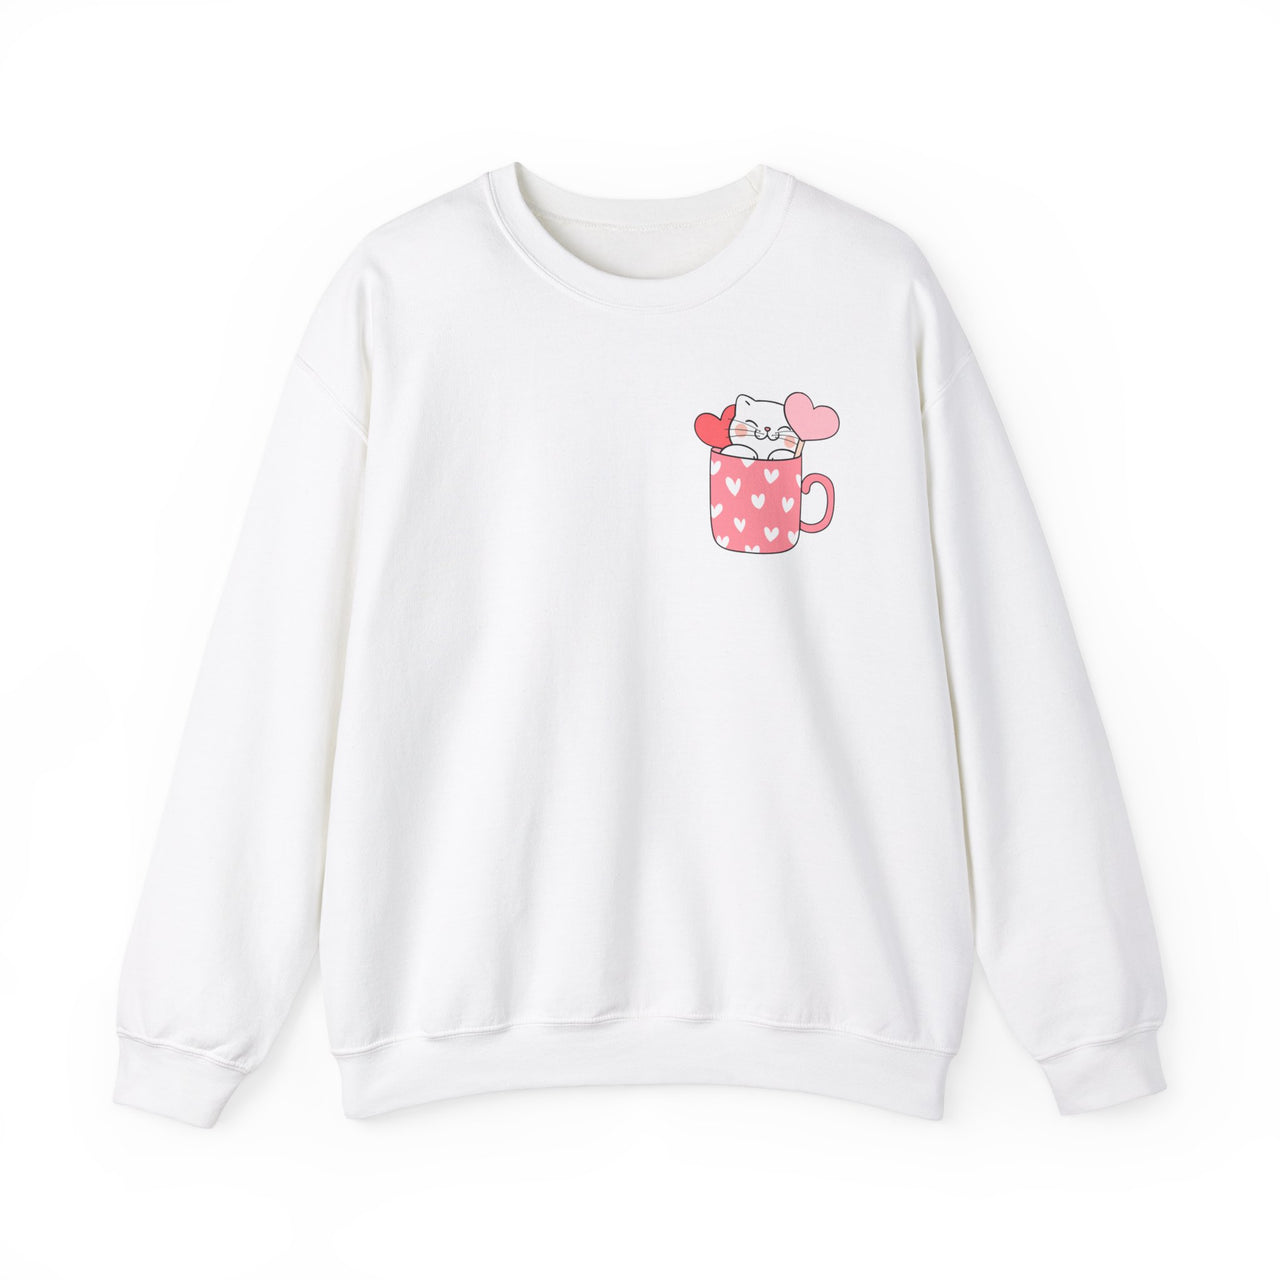 Sweet Kitten In A Cup ❤️ Unisex Sweatshirt